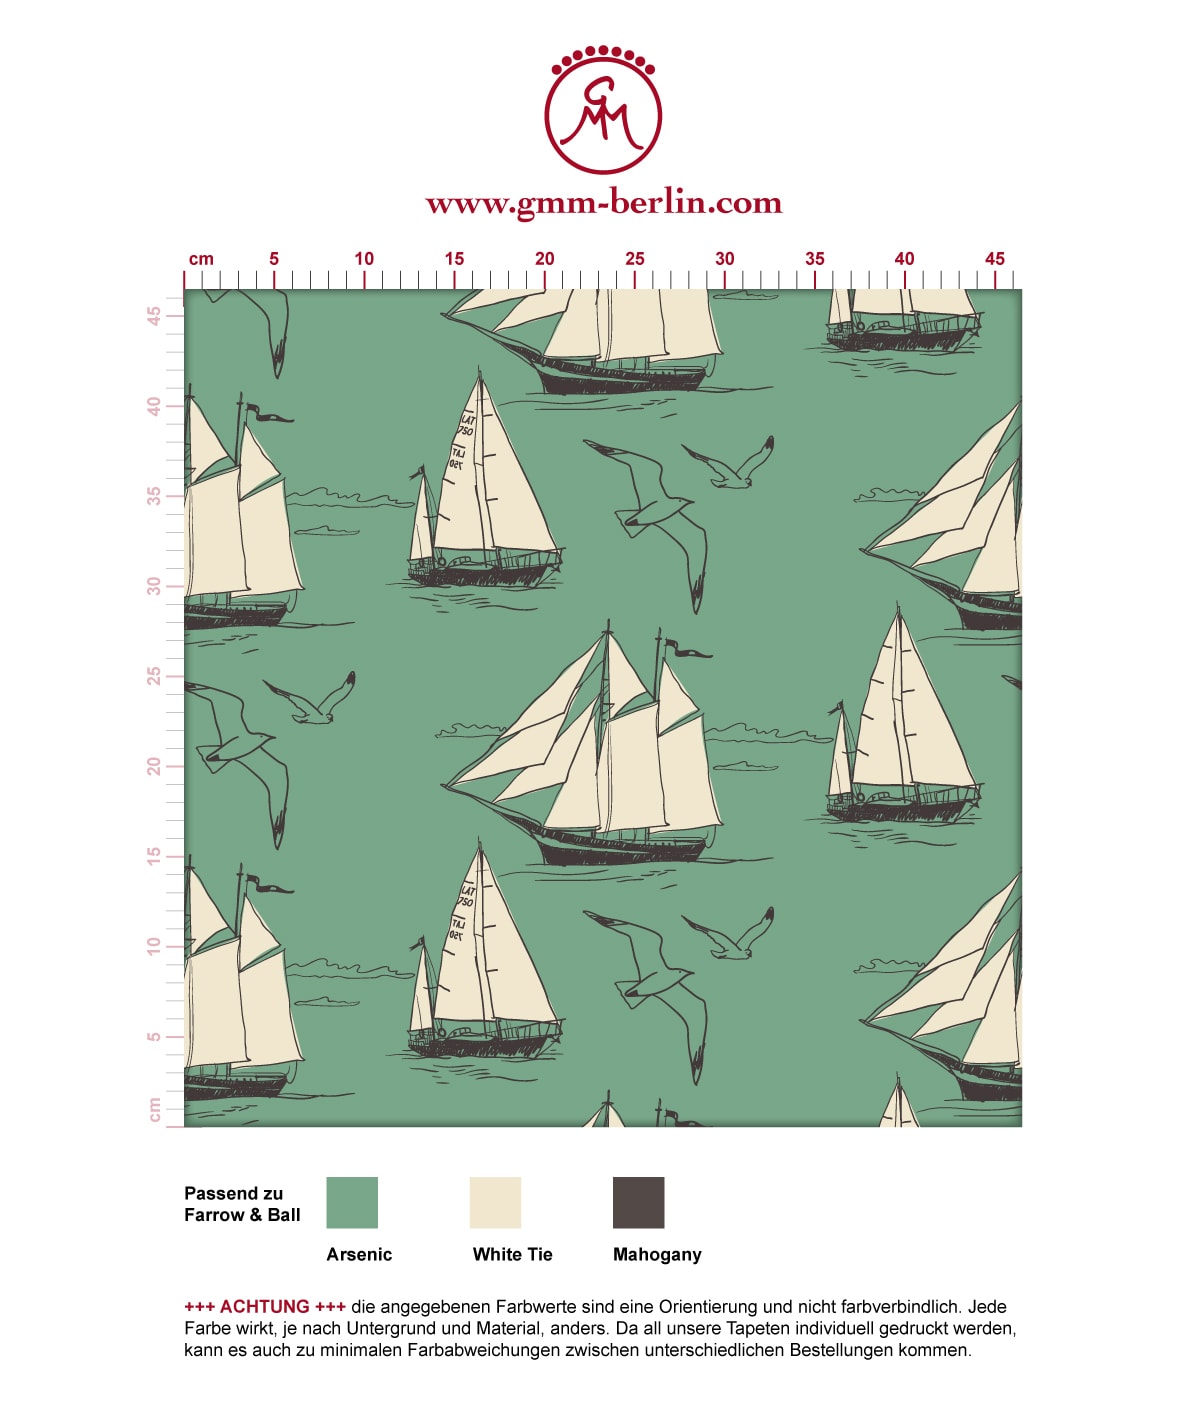 Segler Tapete "Die Regatta" mit klassischen Segelbooten und Möwen auf grün angepasst an Farrow and Ball Wandfarben. Aus dem GMM-BERLIN.com Sortiment: Schöne Tapeten in der Farbe: grün